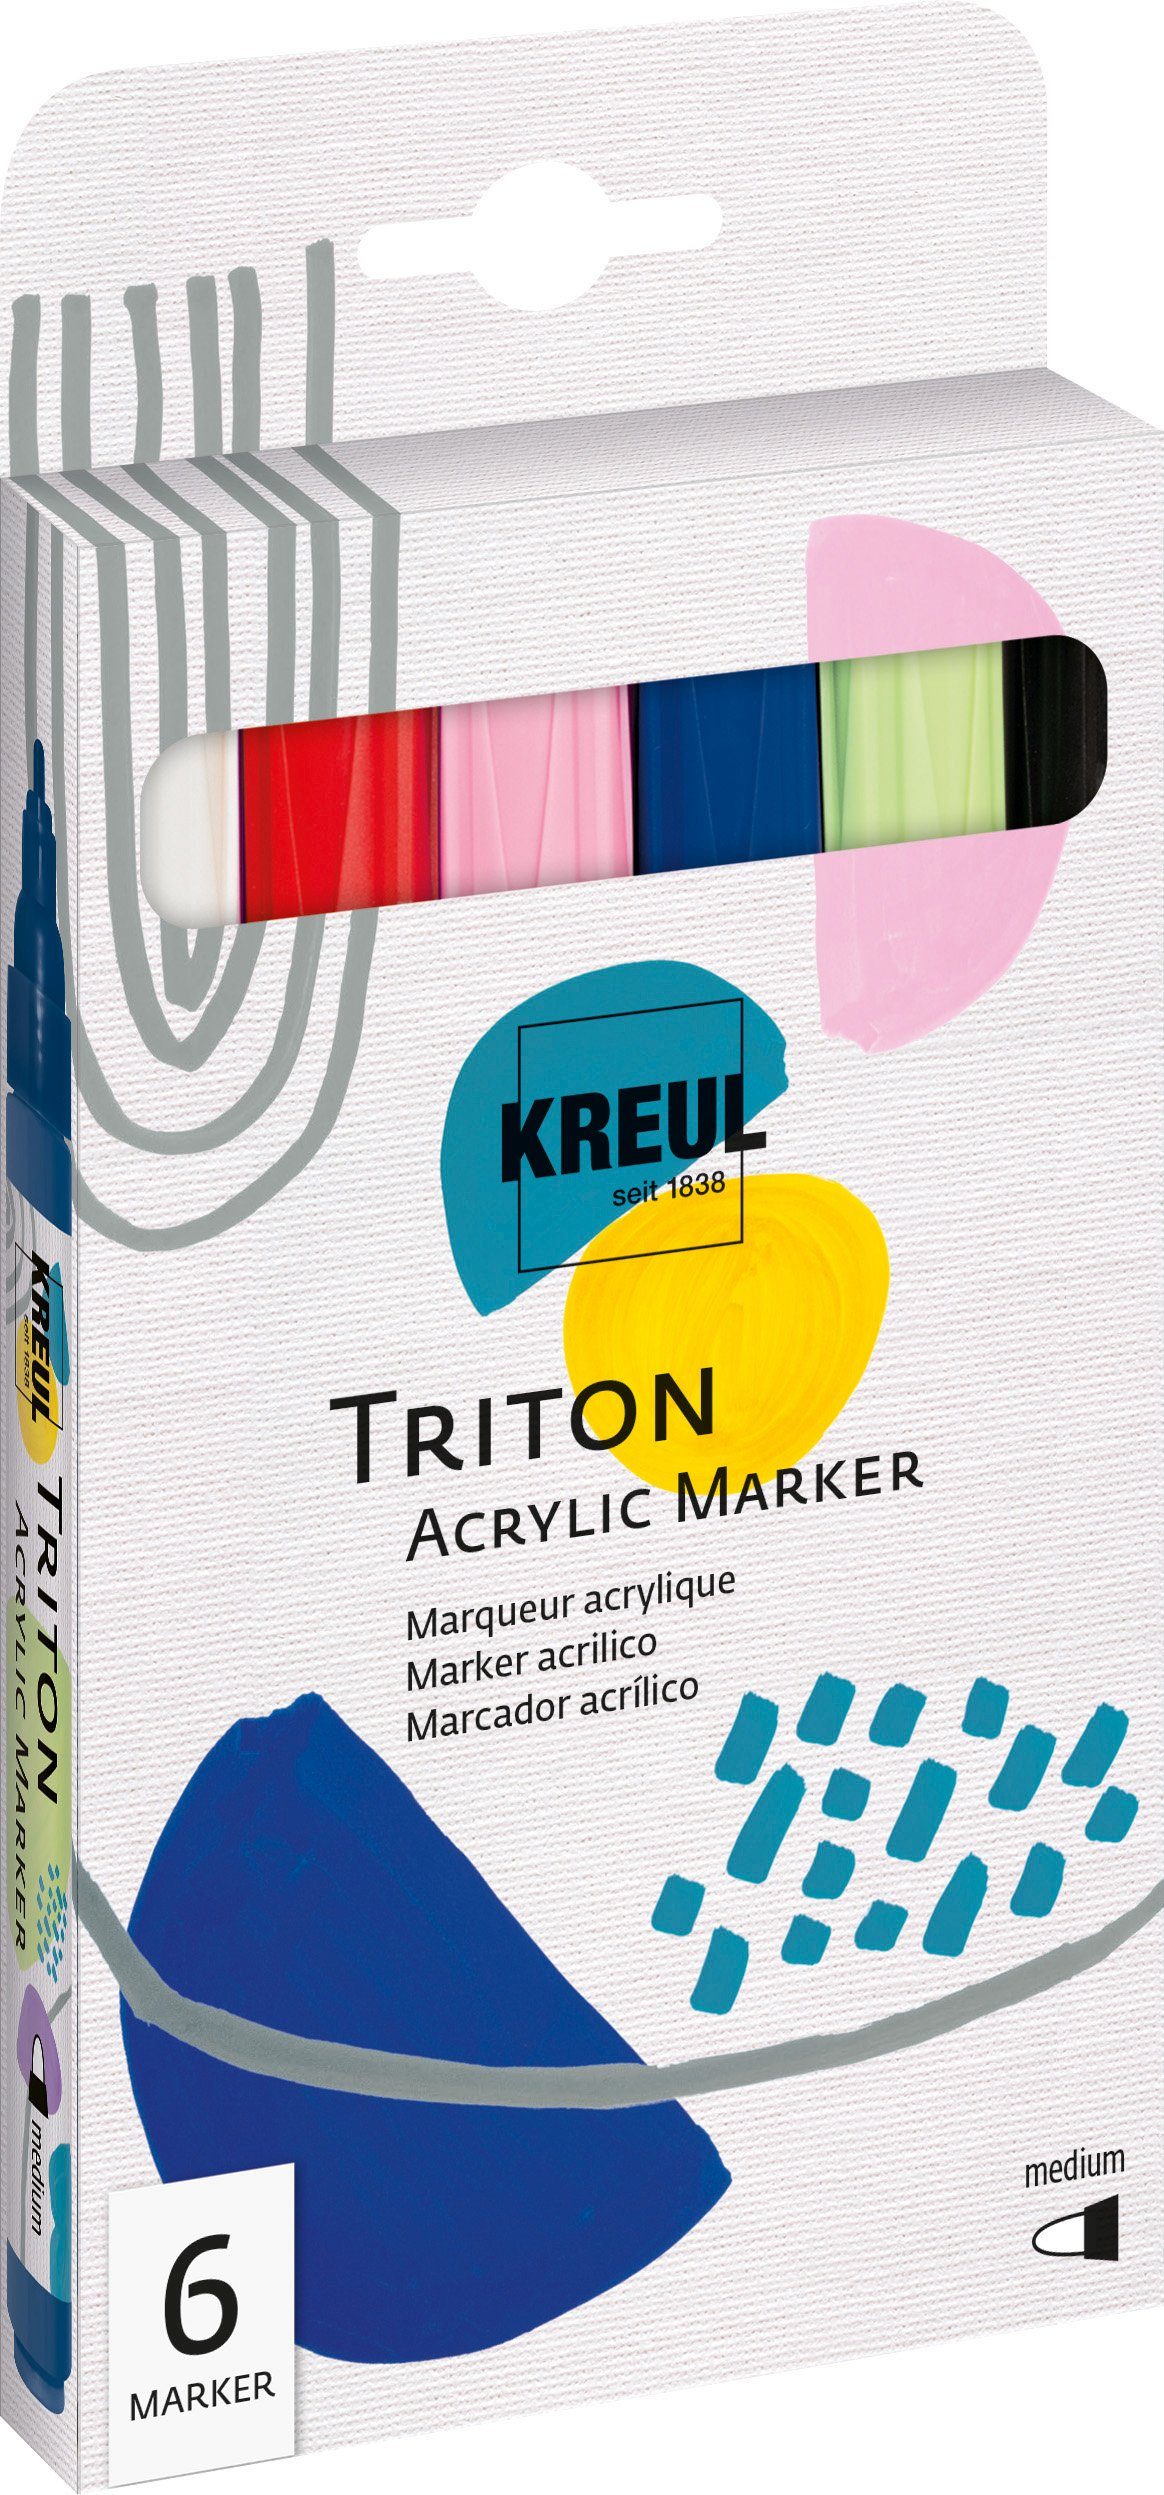 Kreul Marker Triton Medium Marker Acrylic